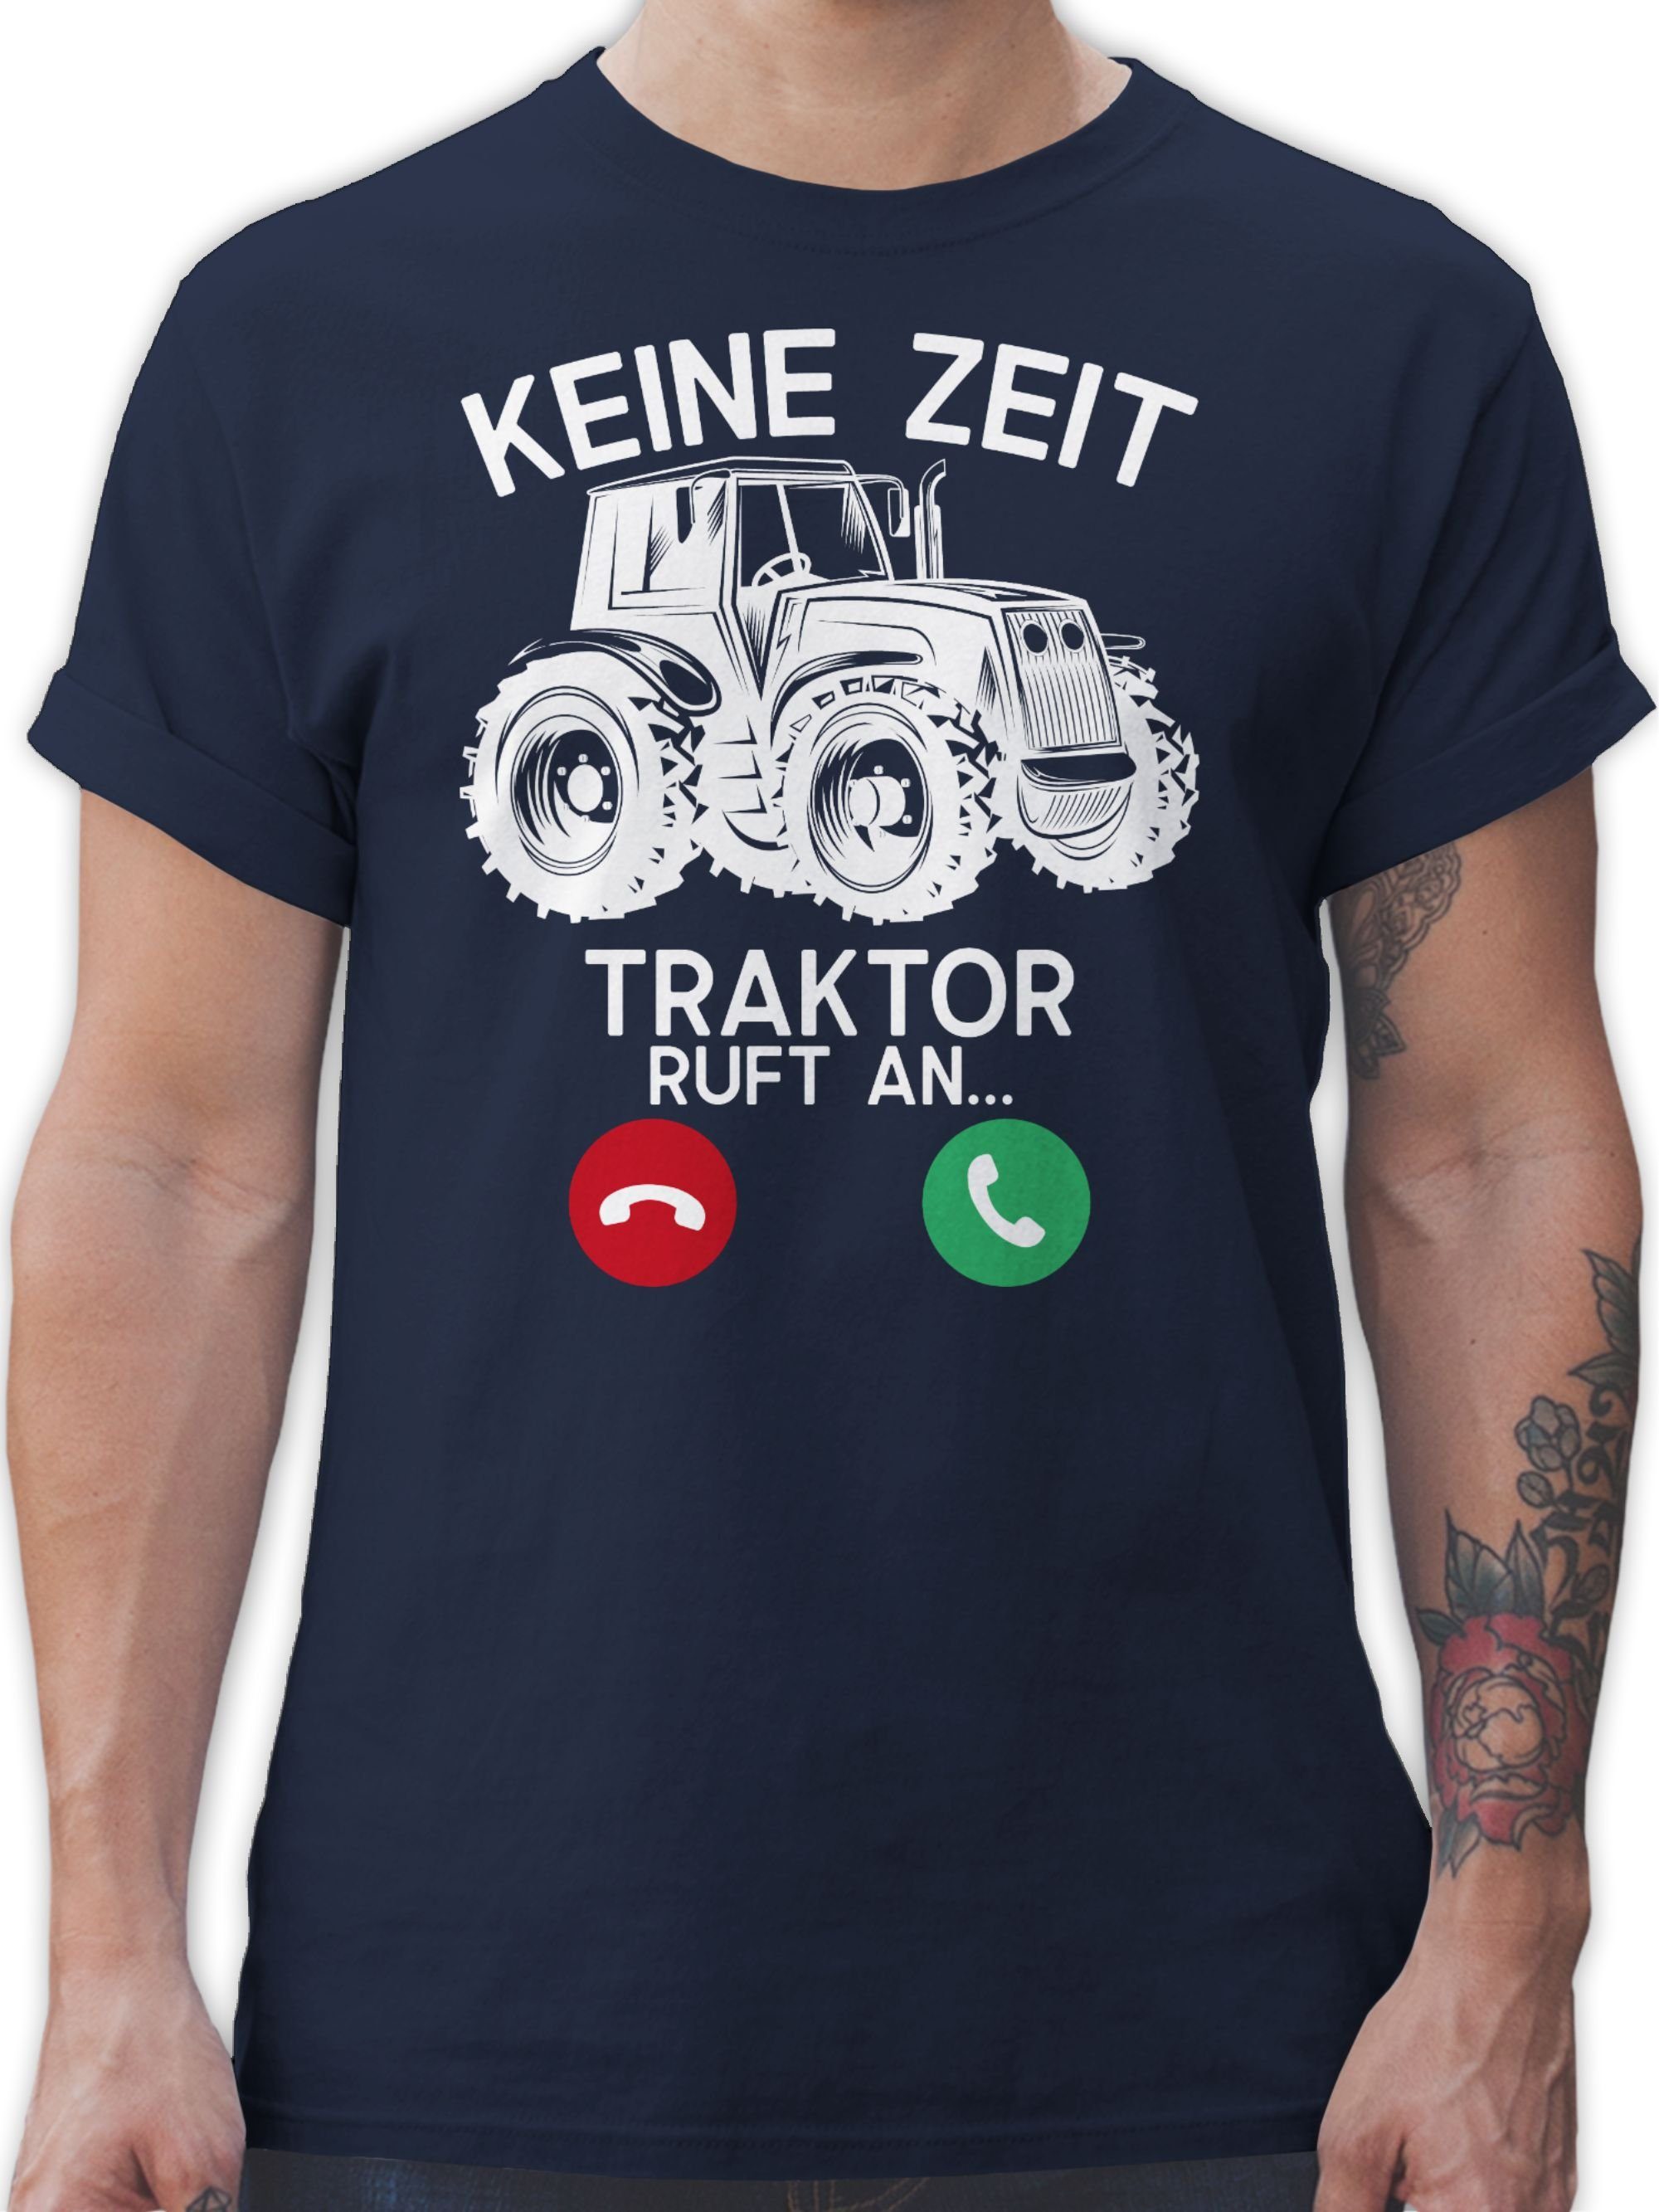 Zeit 2 an Traktor - Navy Fahrzeuge Keine Shirtracer weiß - T-Shirt Blau ruft